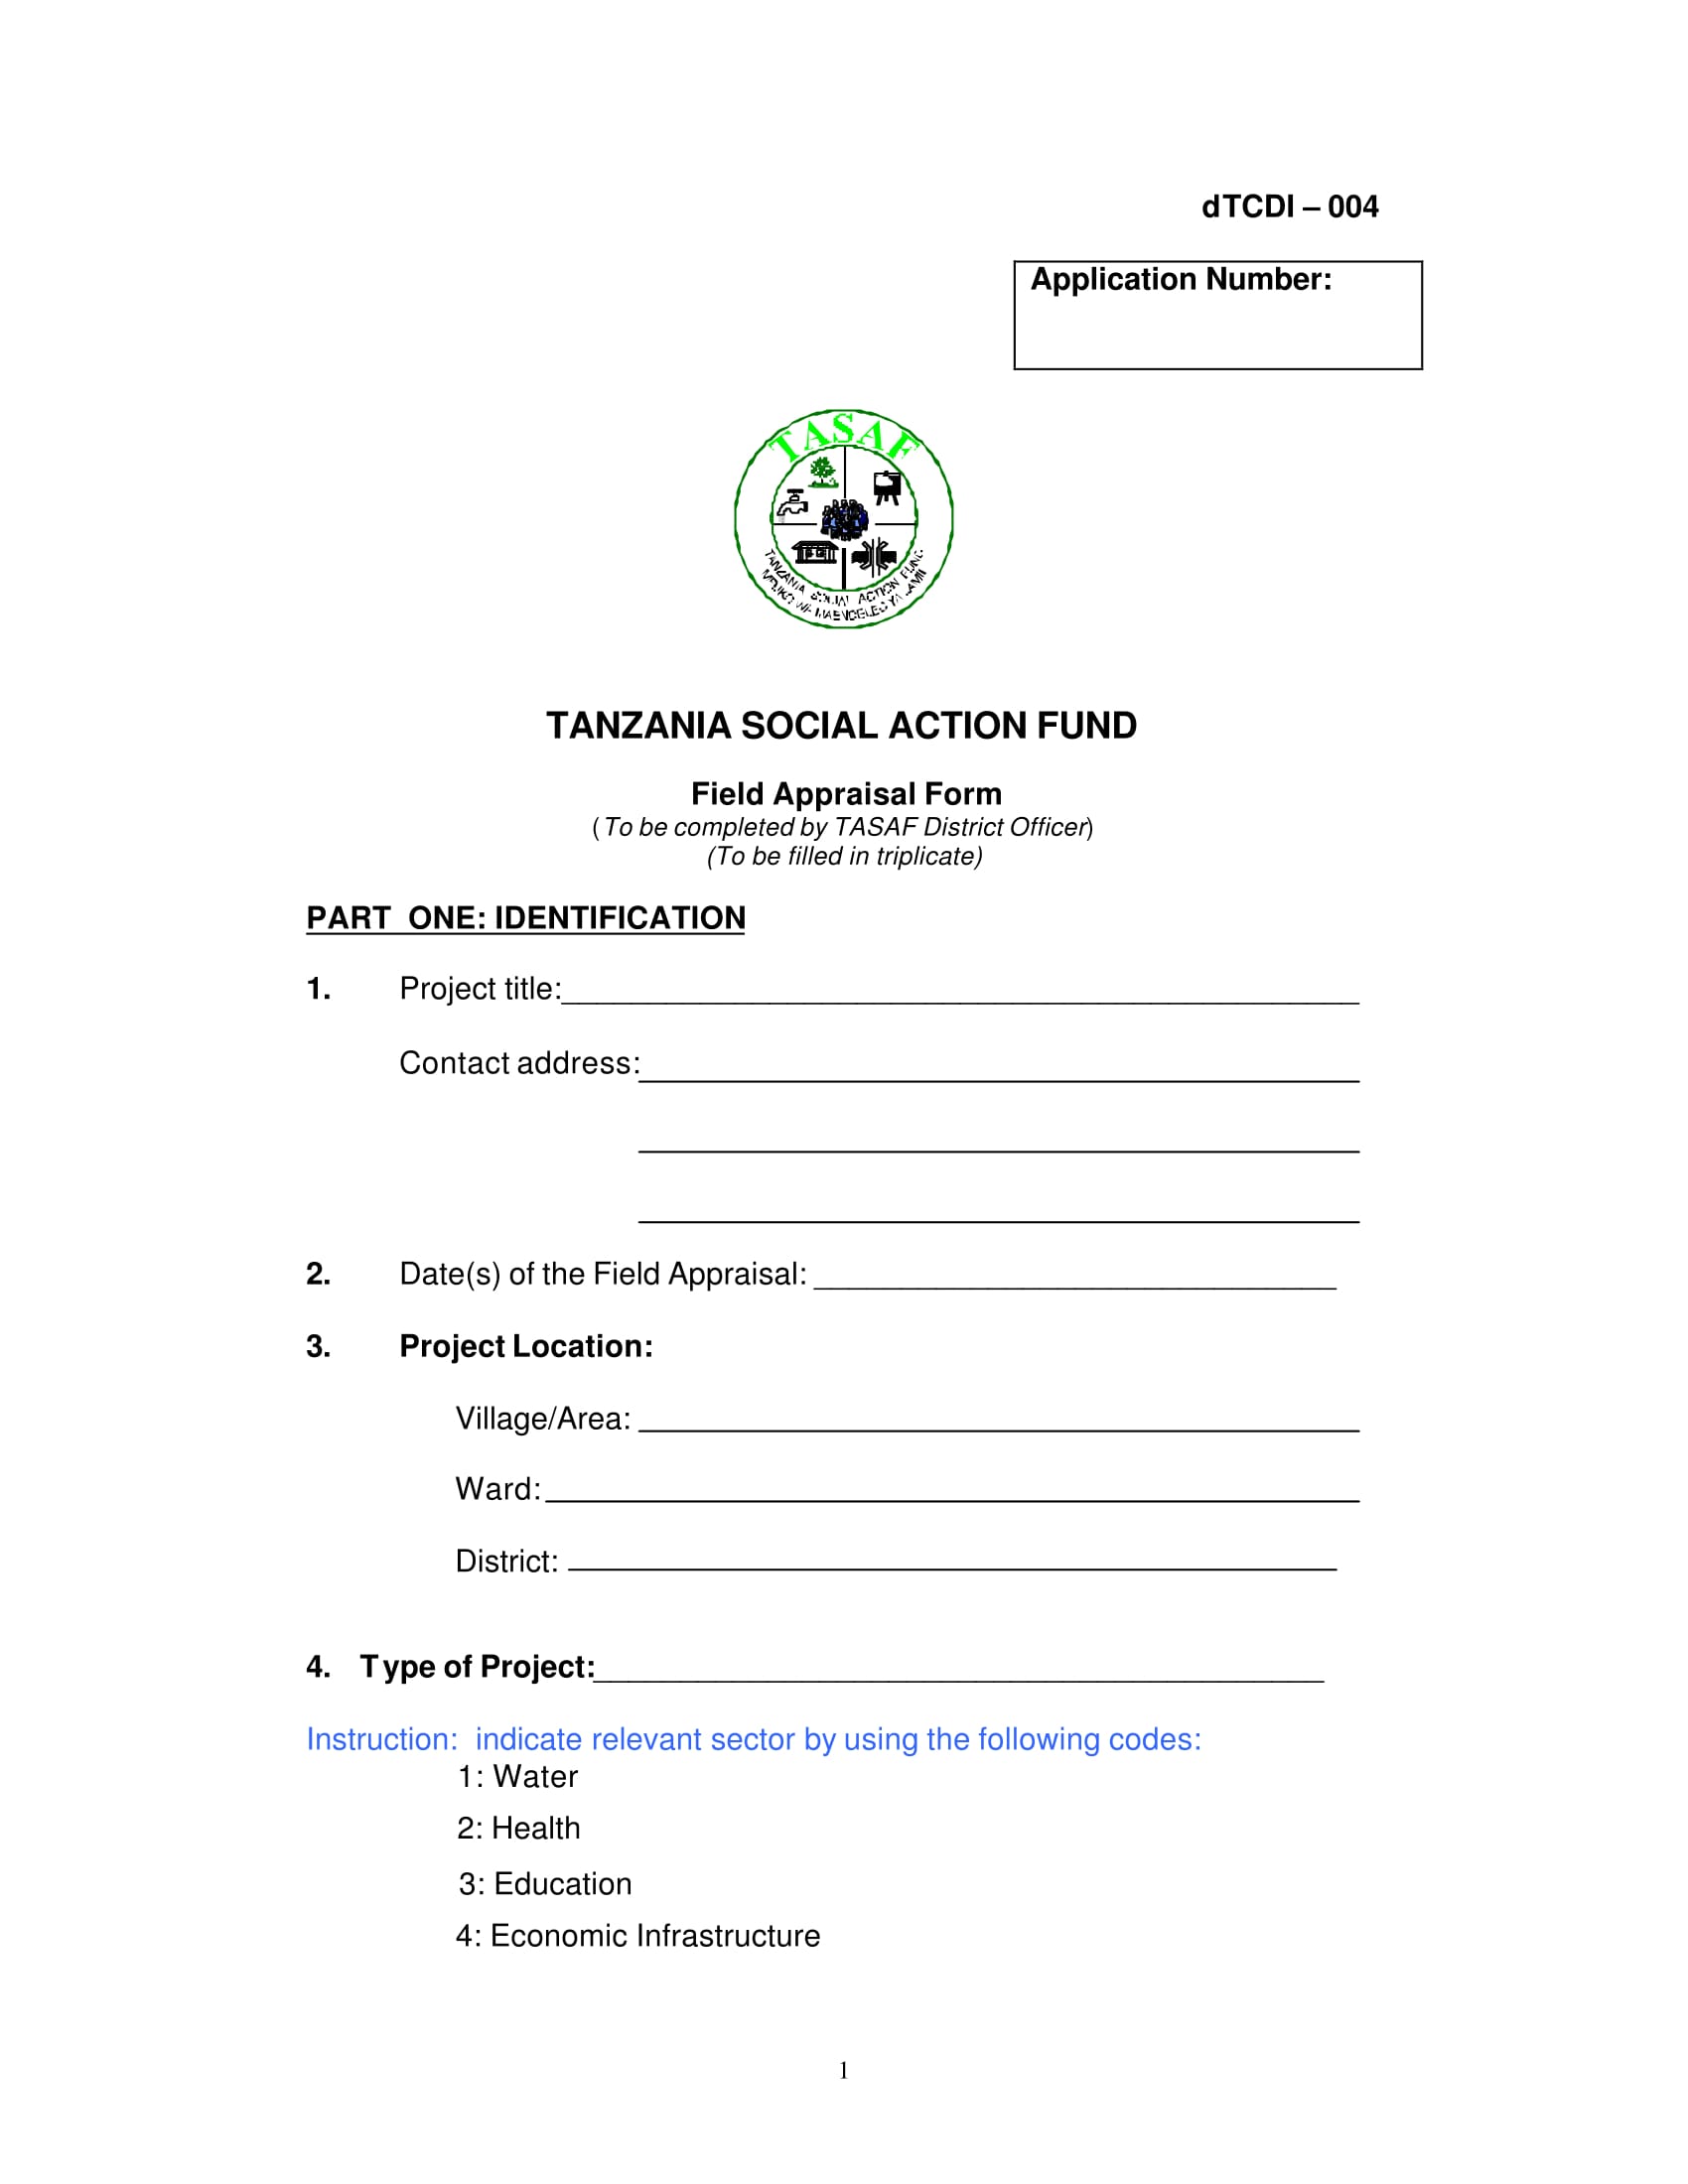 field appraisal form 1